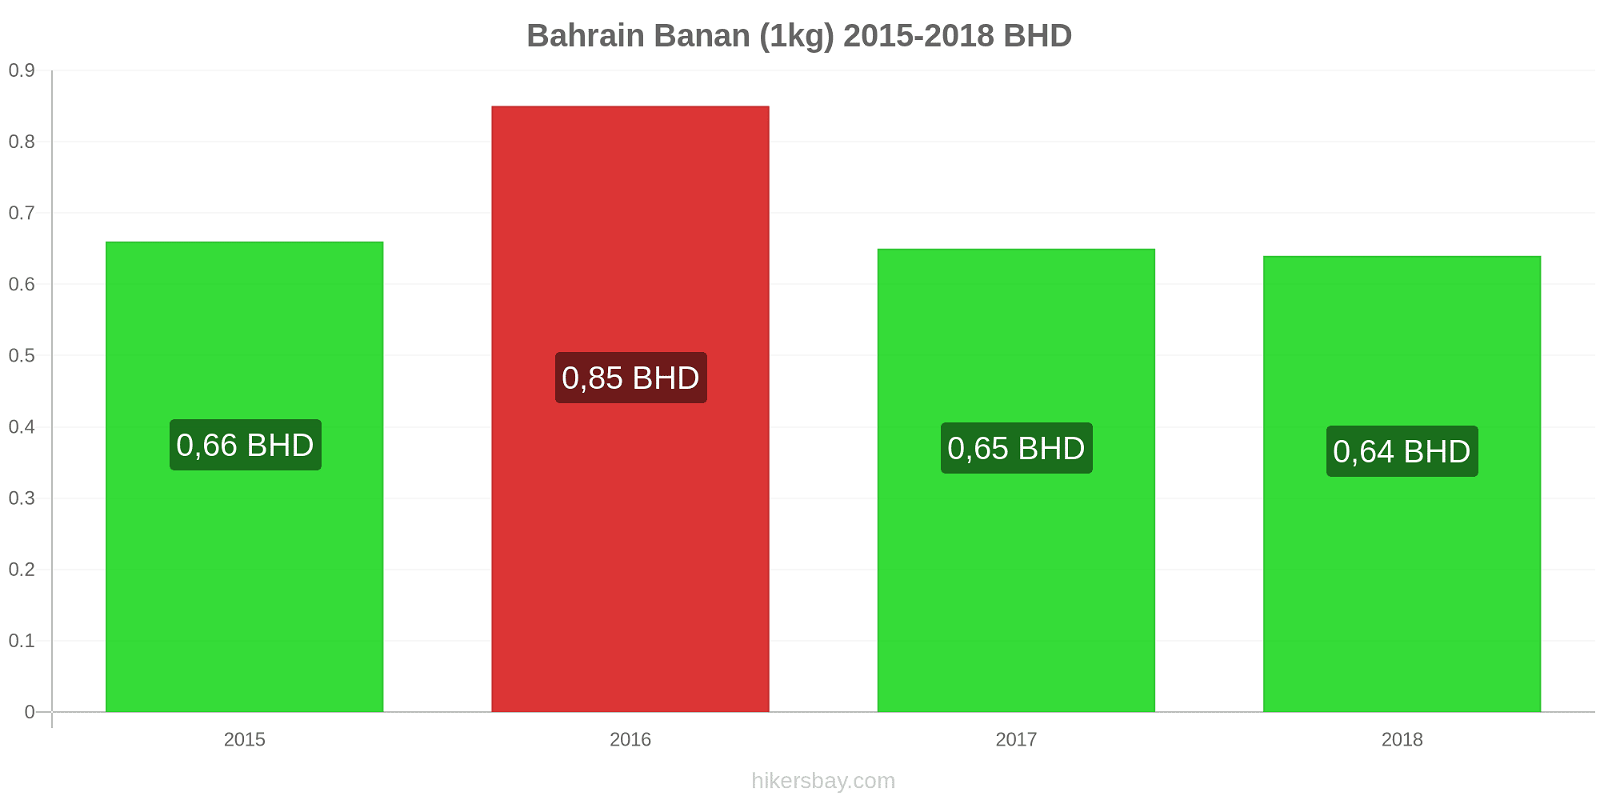 Bahrain prisändringar Bananer (1kg) hikersbay.com